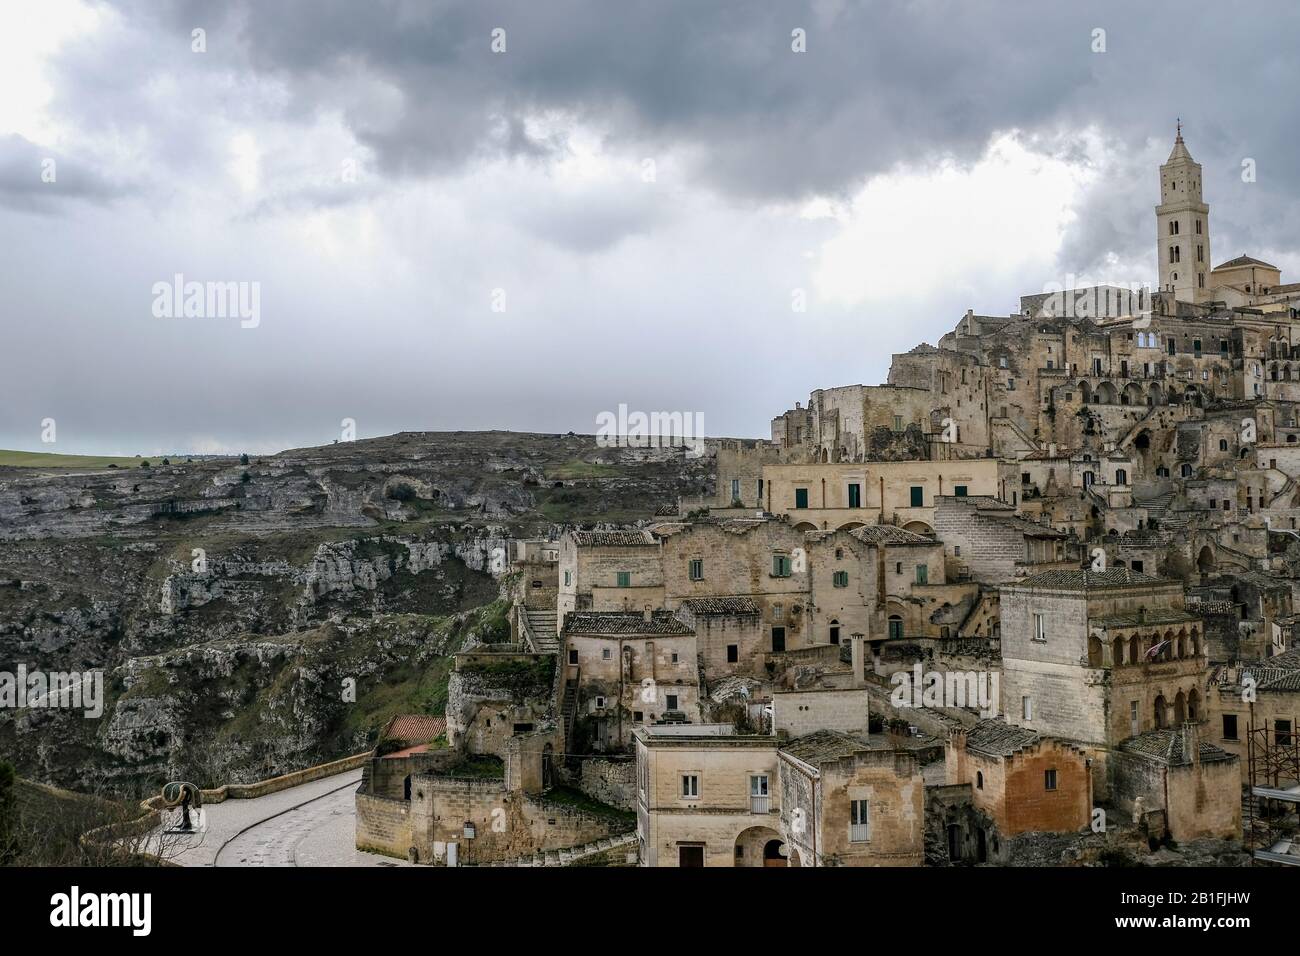 Vista alta de la vieja ciudad de matera, italia, gente y coches, casas tradicionales de piedra Foto de stock